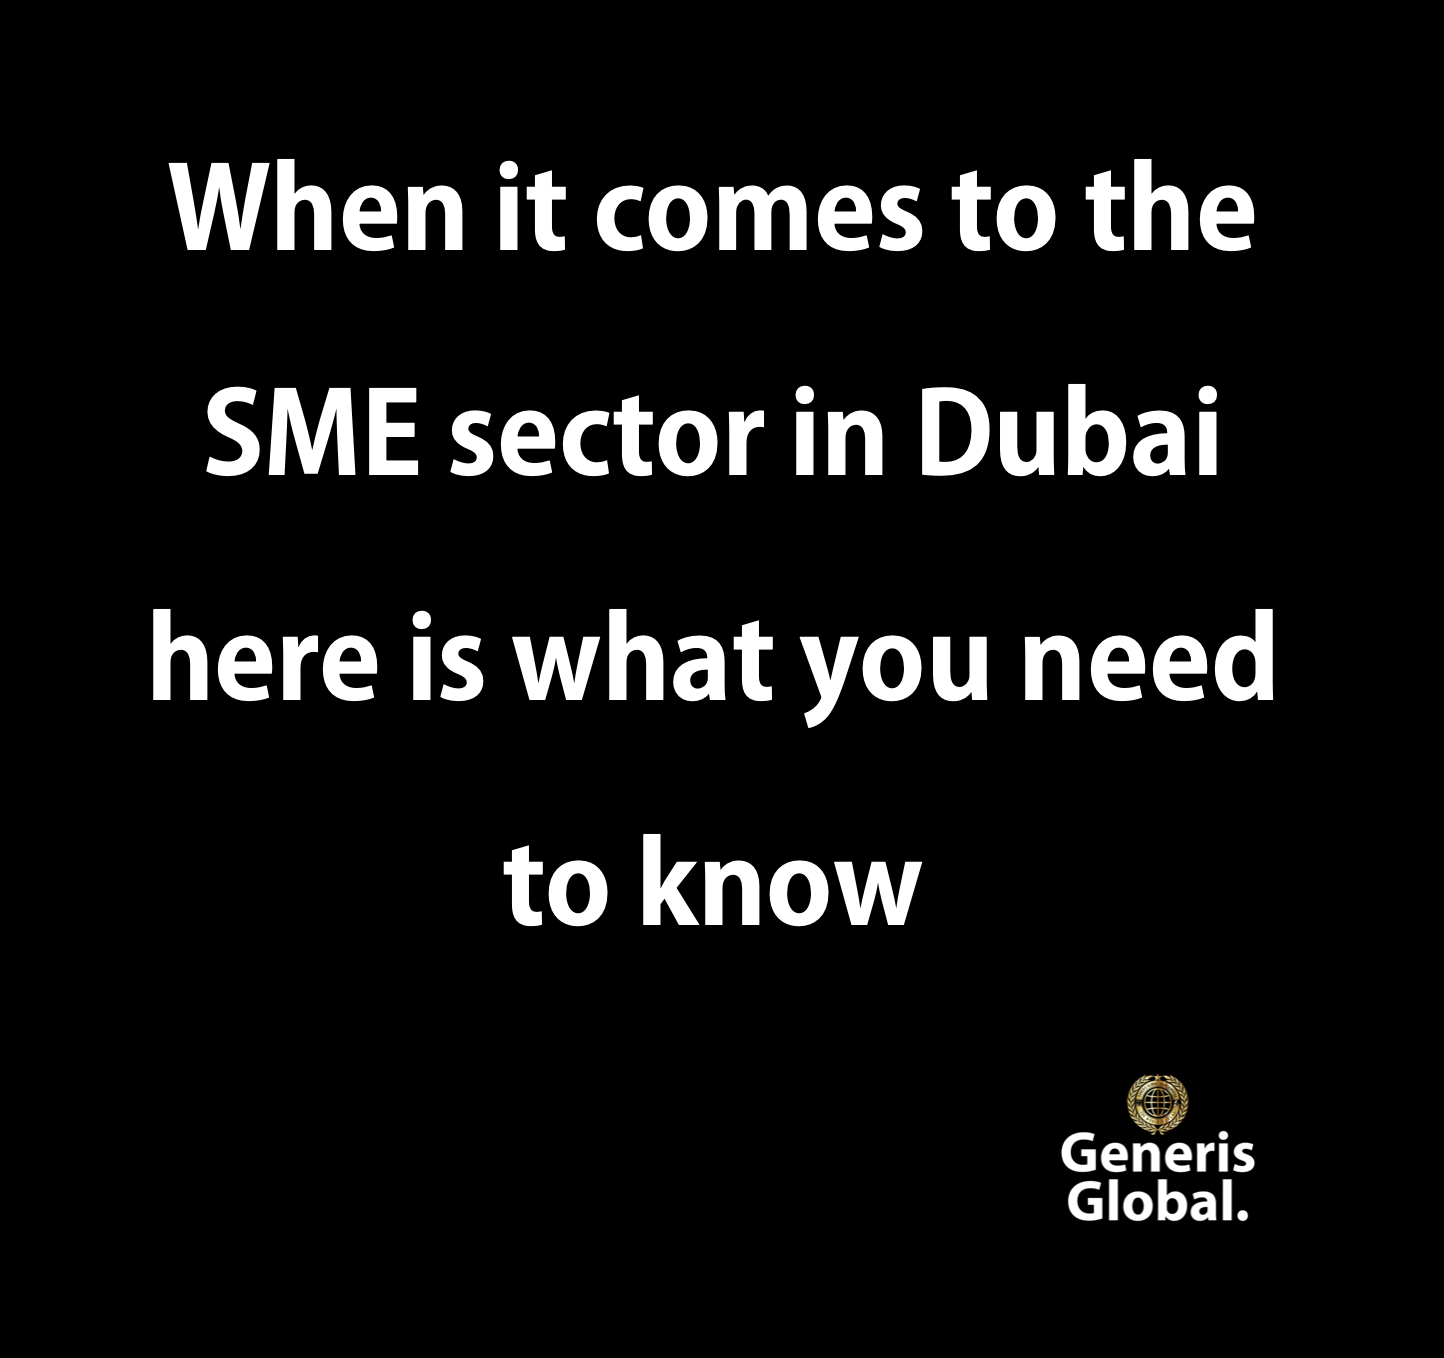 SME sector in Dubai